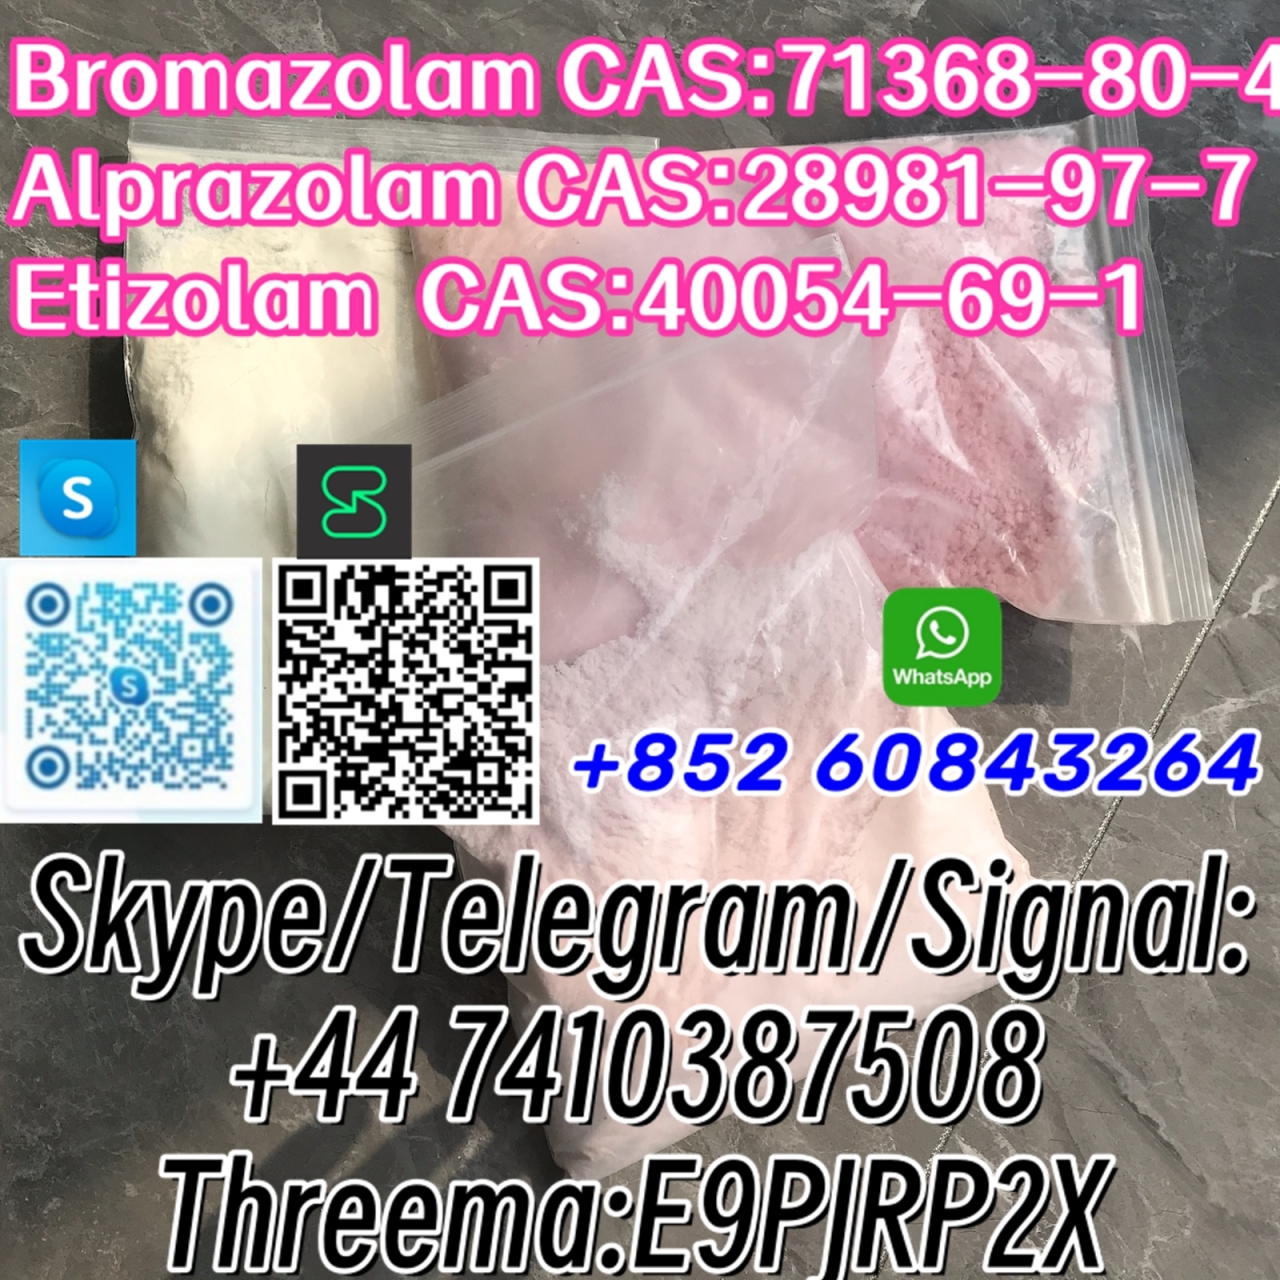 Bromazolam CAS:71368-80-4 Alprazolam CAS:28981-97-7 Etizolam  CAS:40054-69-1 Skype/Telegram/Signal: +44 7410387508 Threema:E9PJRP2X - Bromazolam CAS:71368-80-4
Alprazolam CAS:28981-97-7
Etizolam  CAS:40054-69-1 Skype/Telegram/Signal:
+44 7410387508
Threema:E9PJRP2X